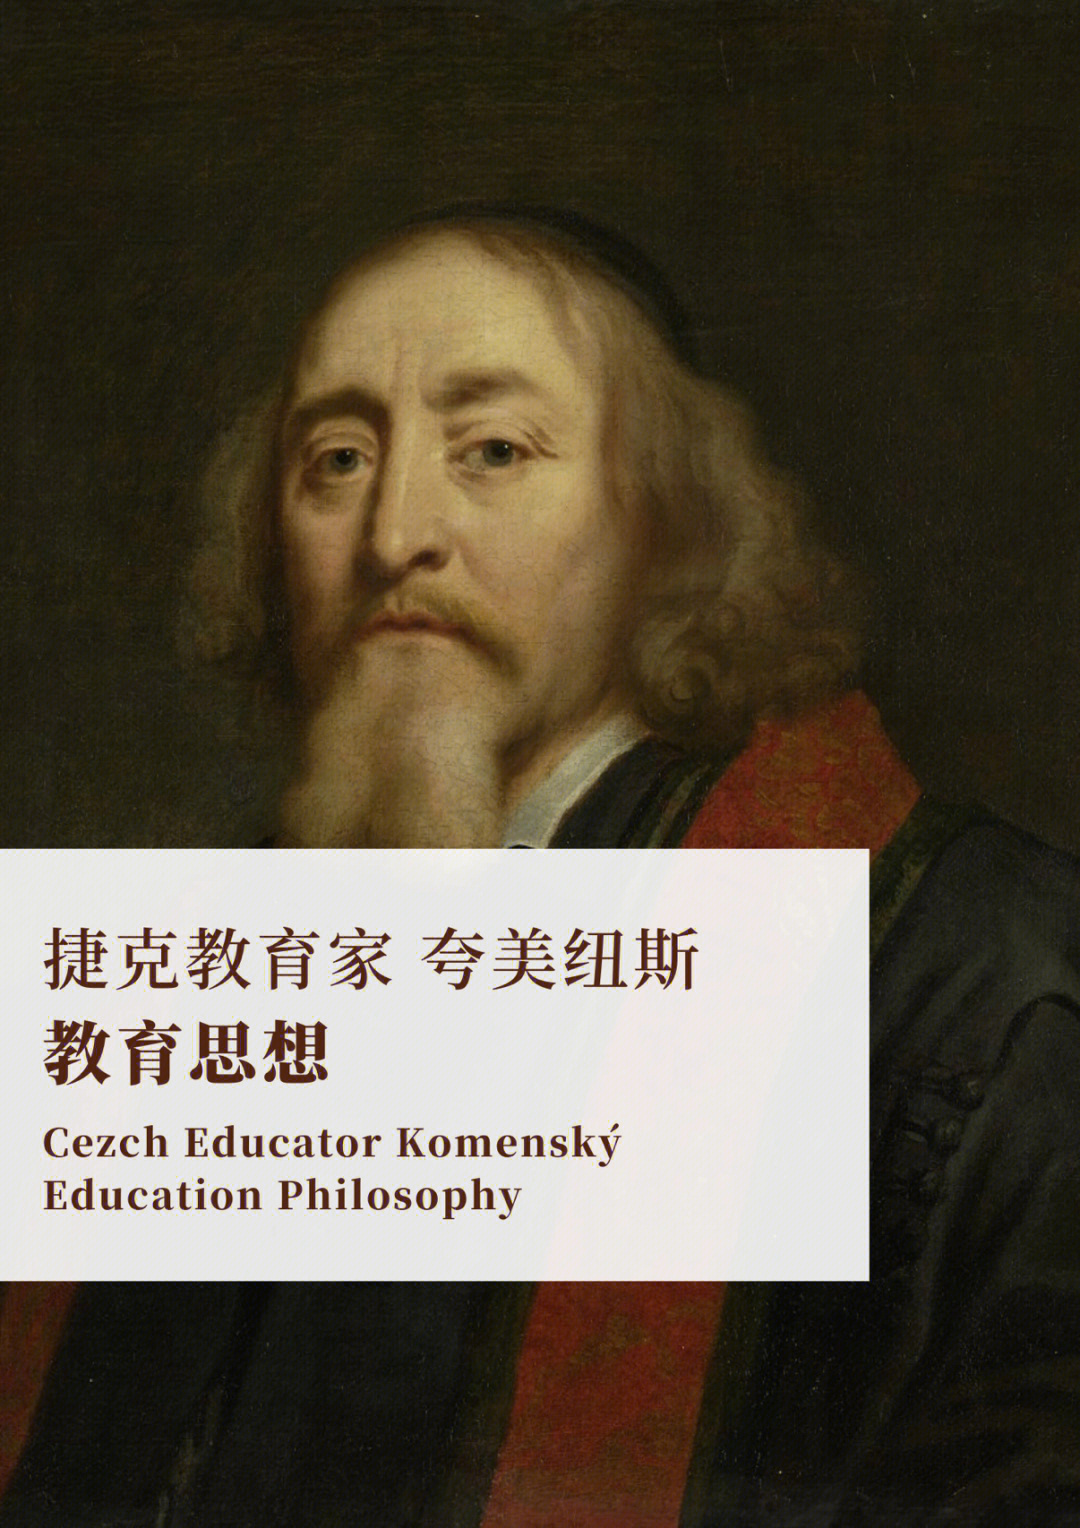 夸美纽斯(1592—1670)是17世纪捷克的伟大教育改革家和教育理论家,是